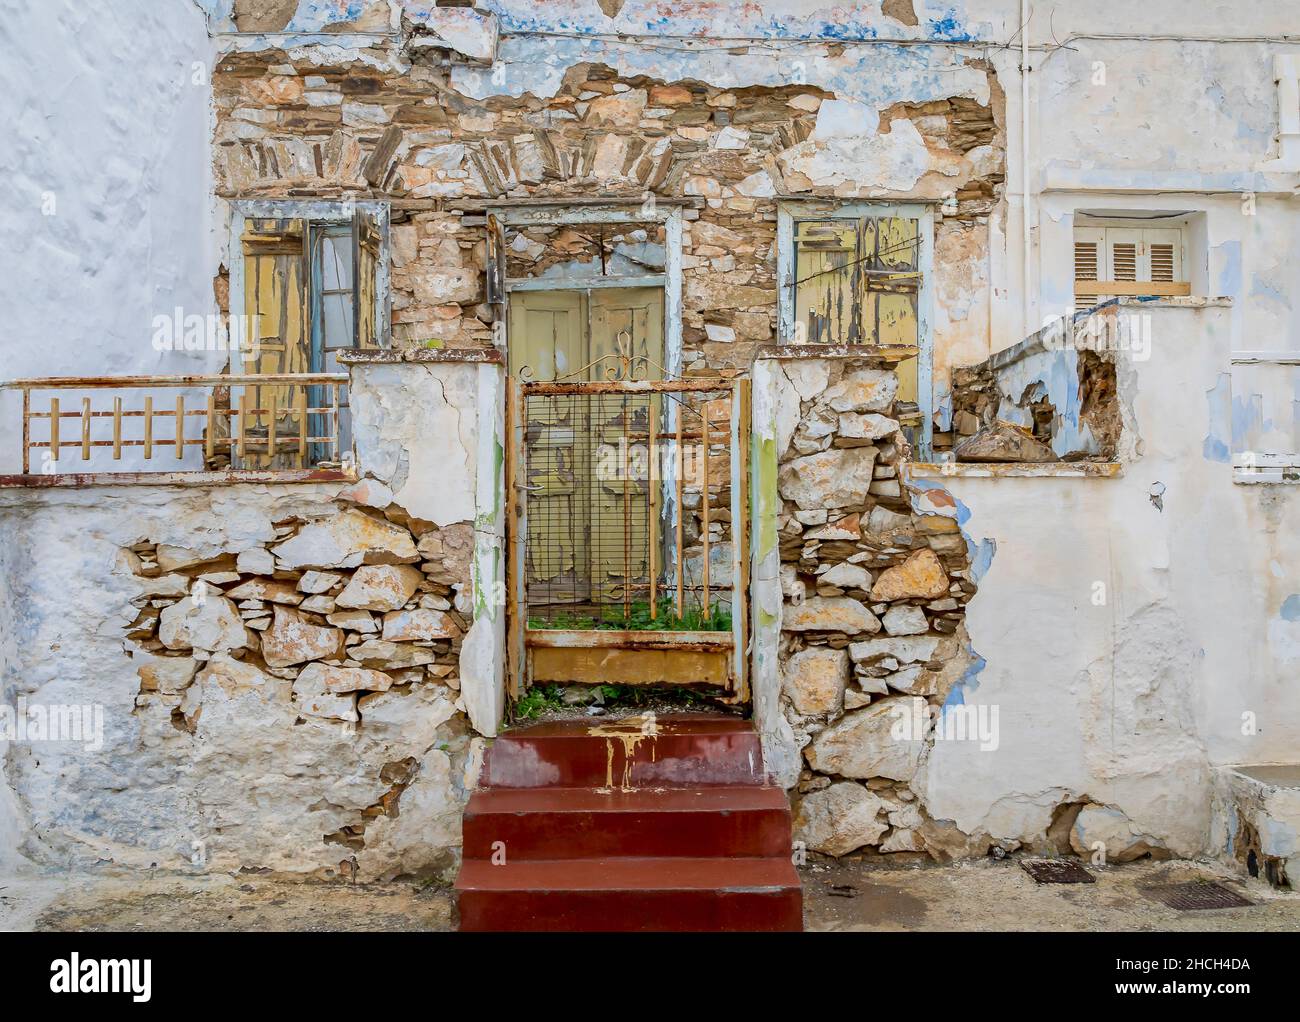 Heruntergekommenes Haus. Vorderansicht eines alten verlassenen verlassenen Hauses auf einer griechischen Insel. Stock-Bild. Stockfoto